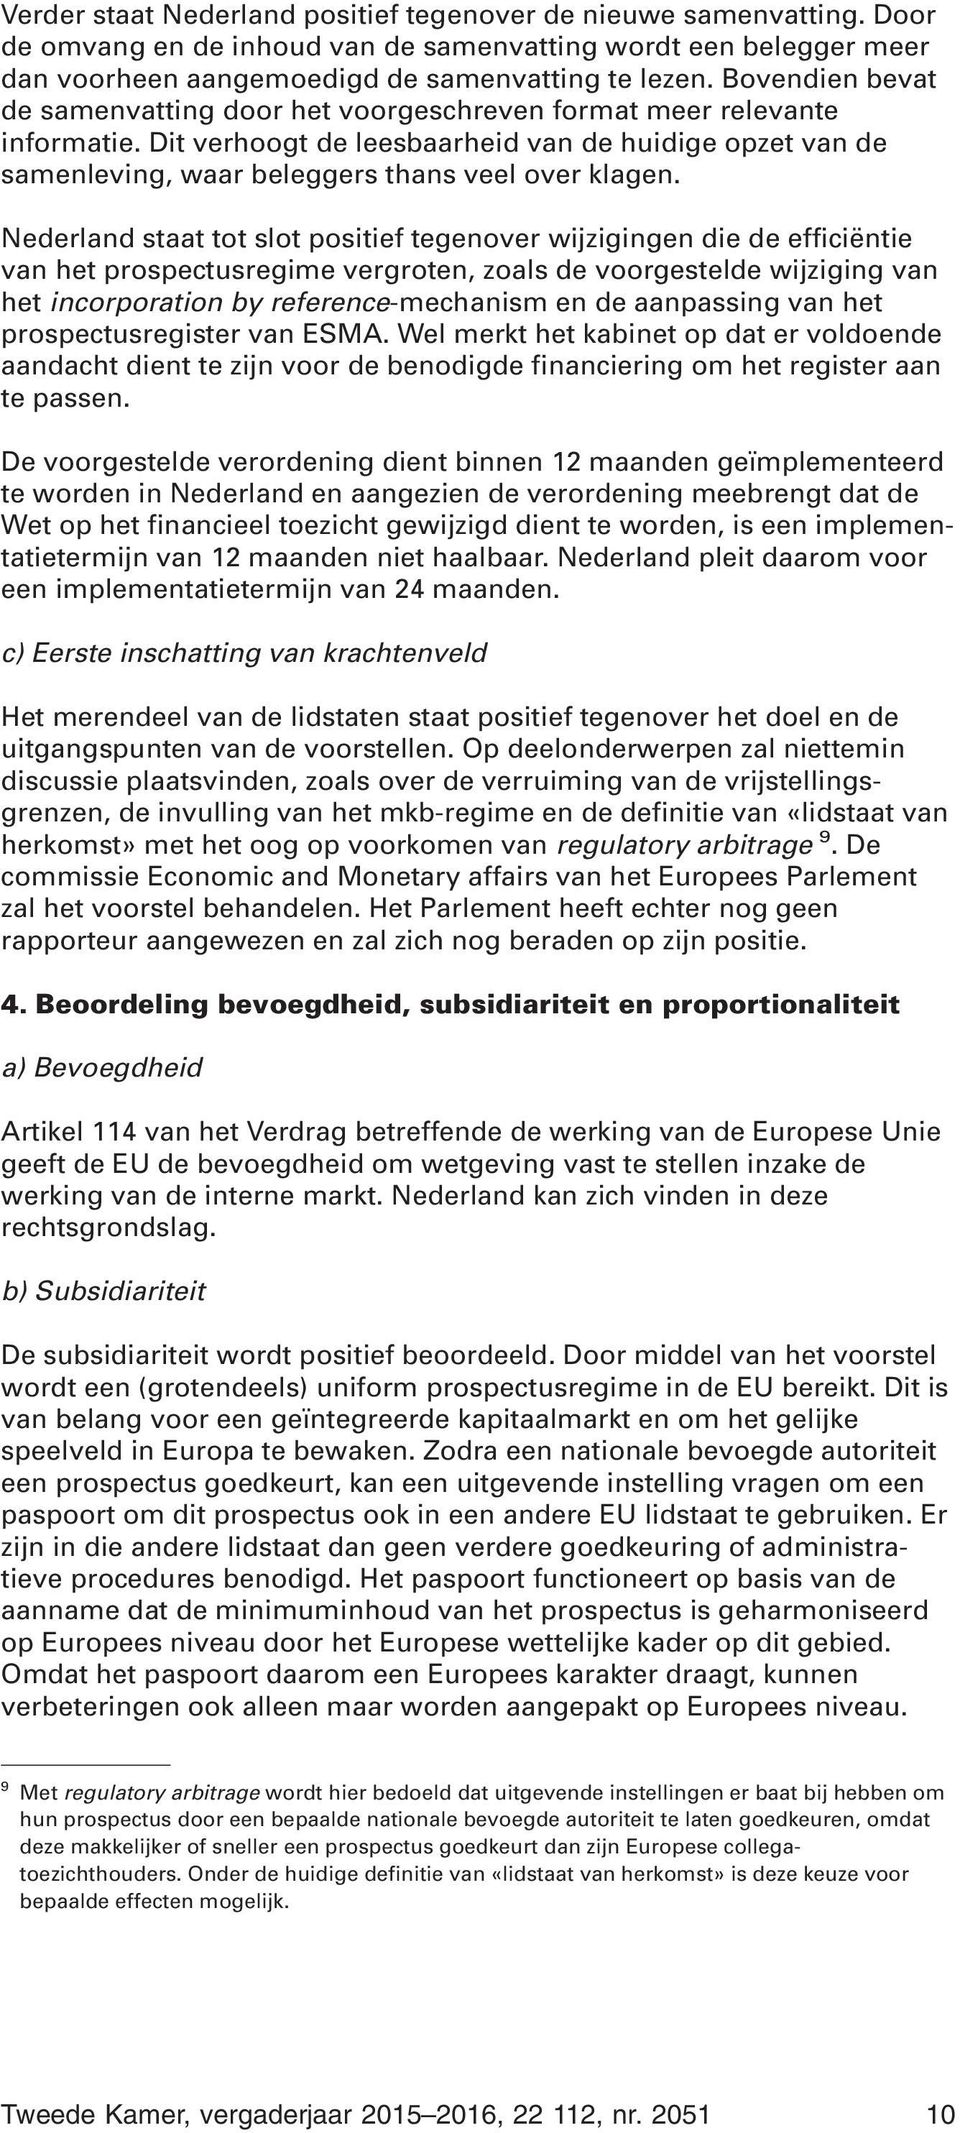 Nederland staat tot slot positief tegenover wijzigingen die de efficiëntie van het prospectusregime vergroten, zoals de voorgestelde wijziging van het incorporation by reference-mechanism en de